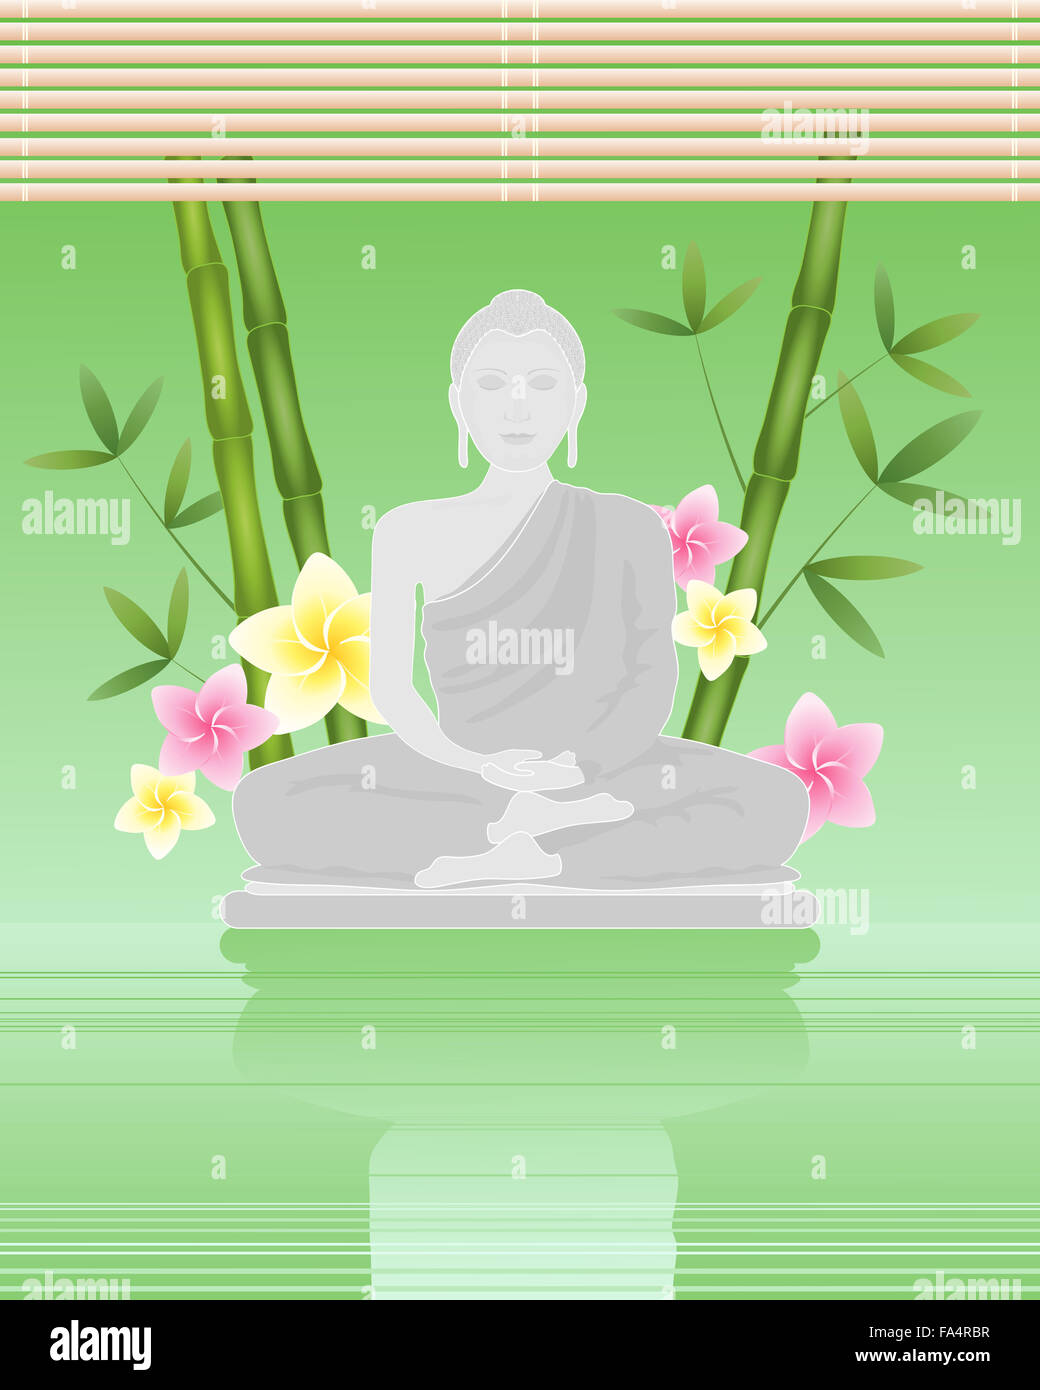 Una illustrazione di un Buddha seduto da acqua ancora verde con germogli di bambù fiori e fogliame su un rilassante sfondo verde Foto Stock